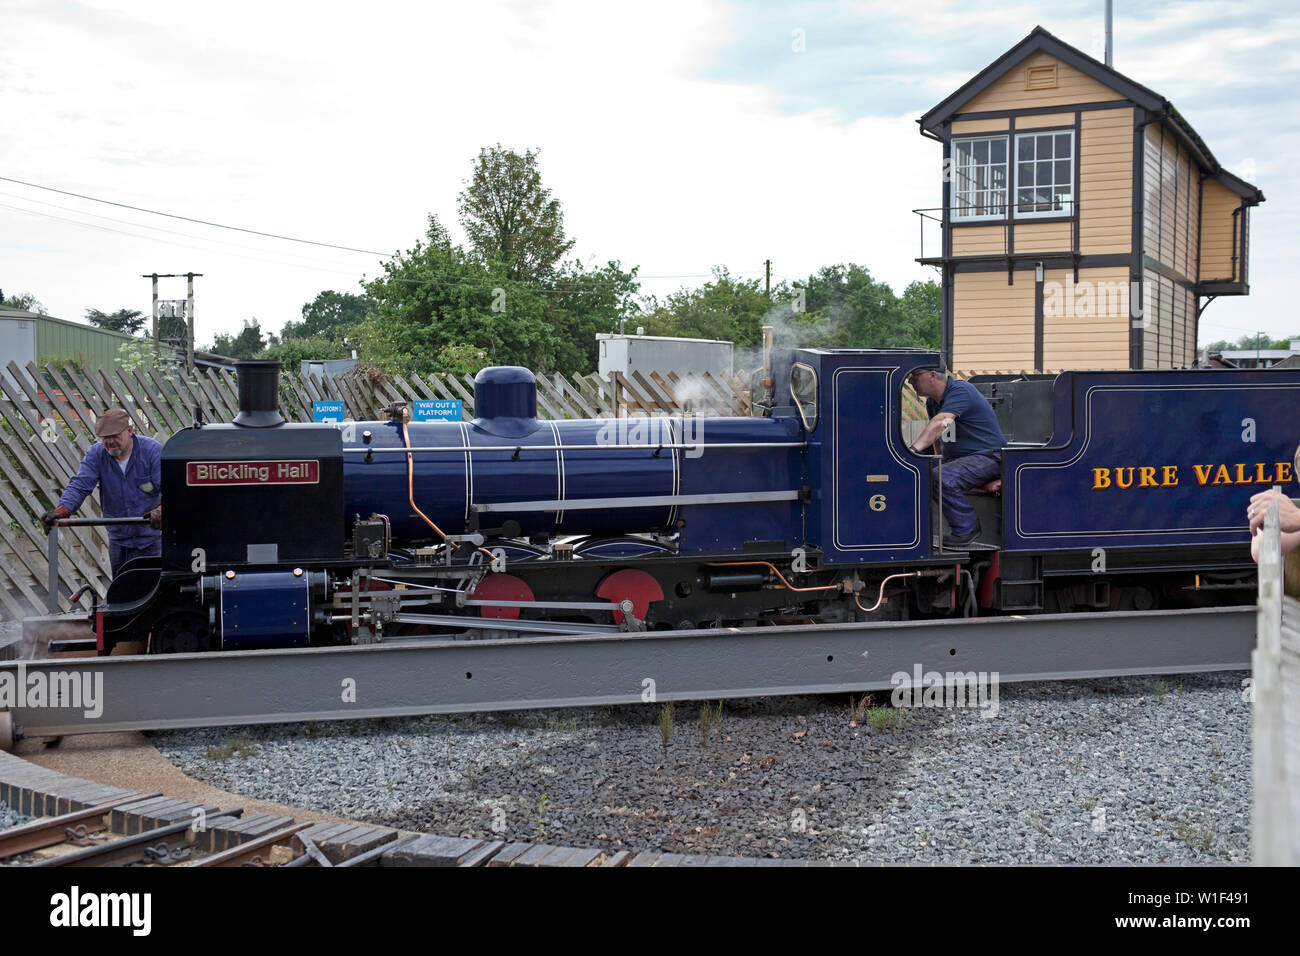 Bure Valley railway, Norfolk, England, UK Stock Photo